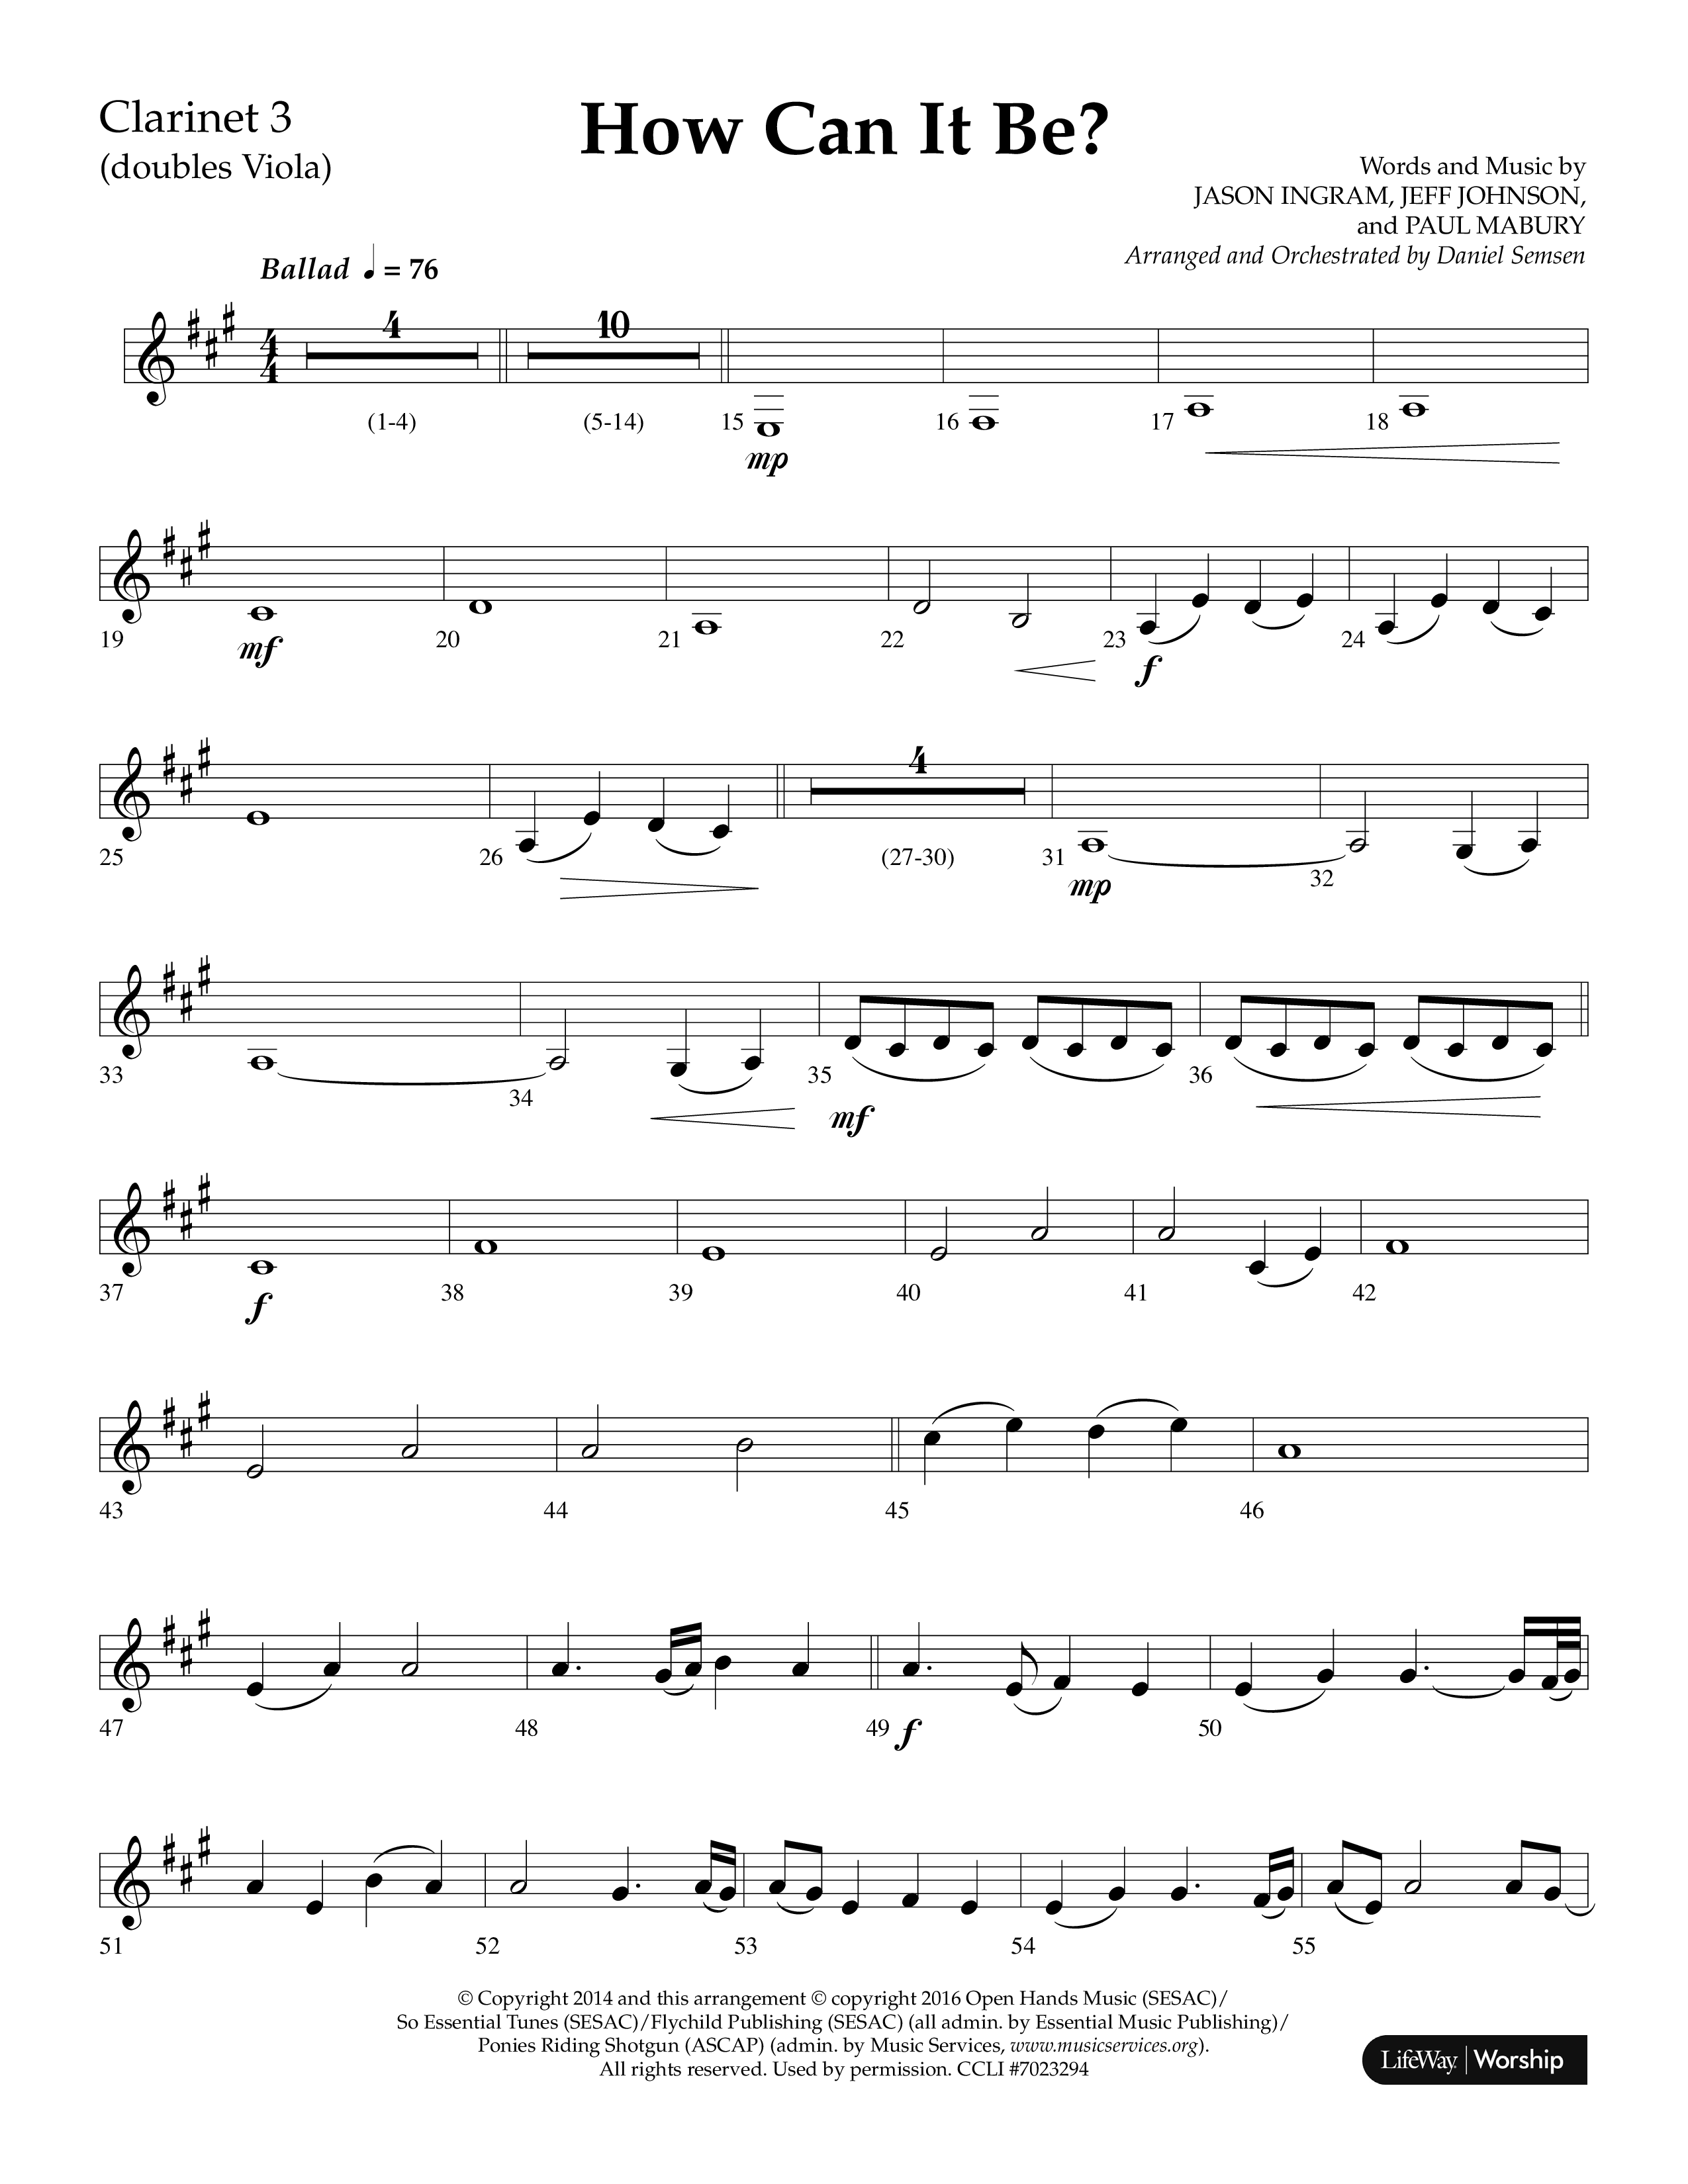 How Can It Be (Choral Anthem SATB) Clarinet 3 (Lifeway Choral / Arr. Daniel Semsen)